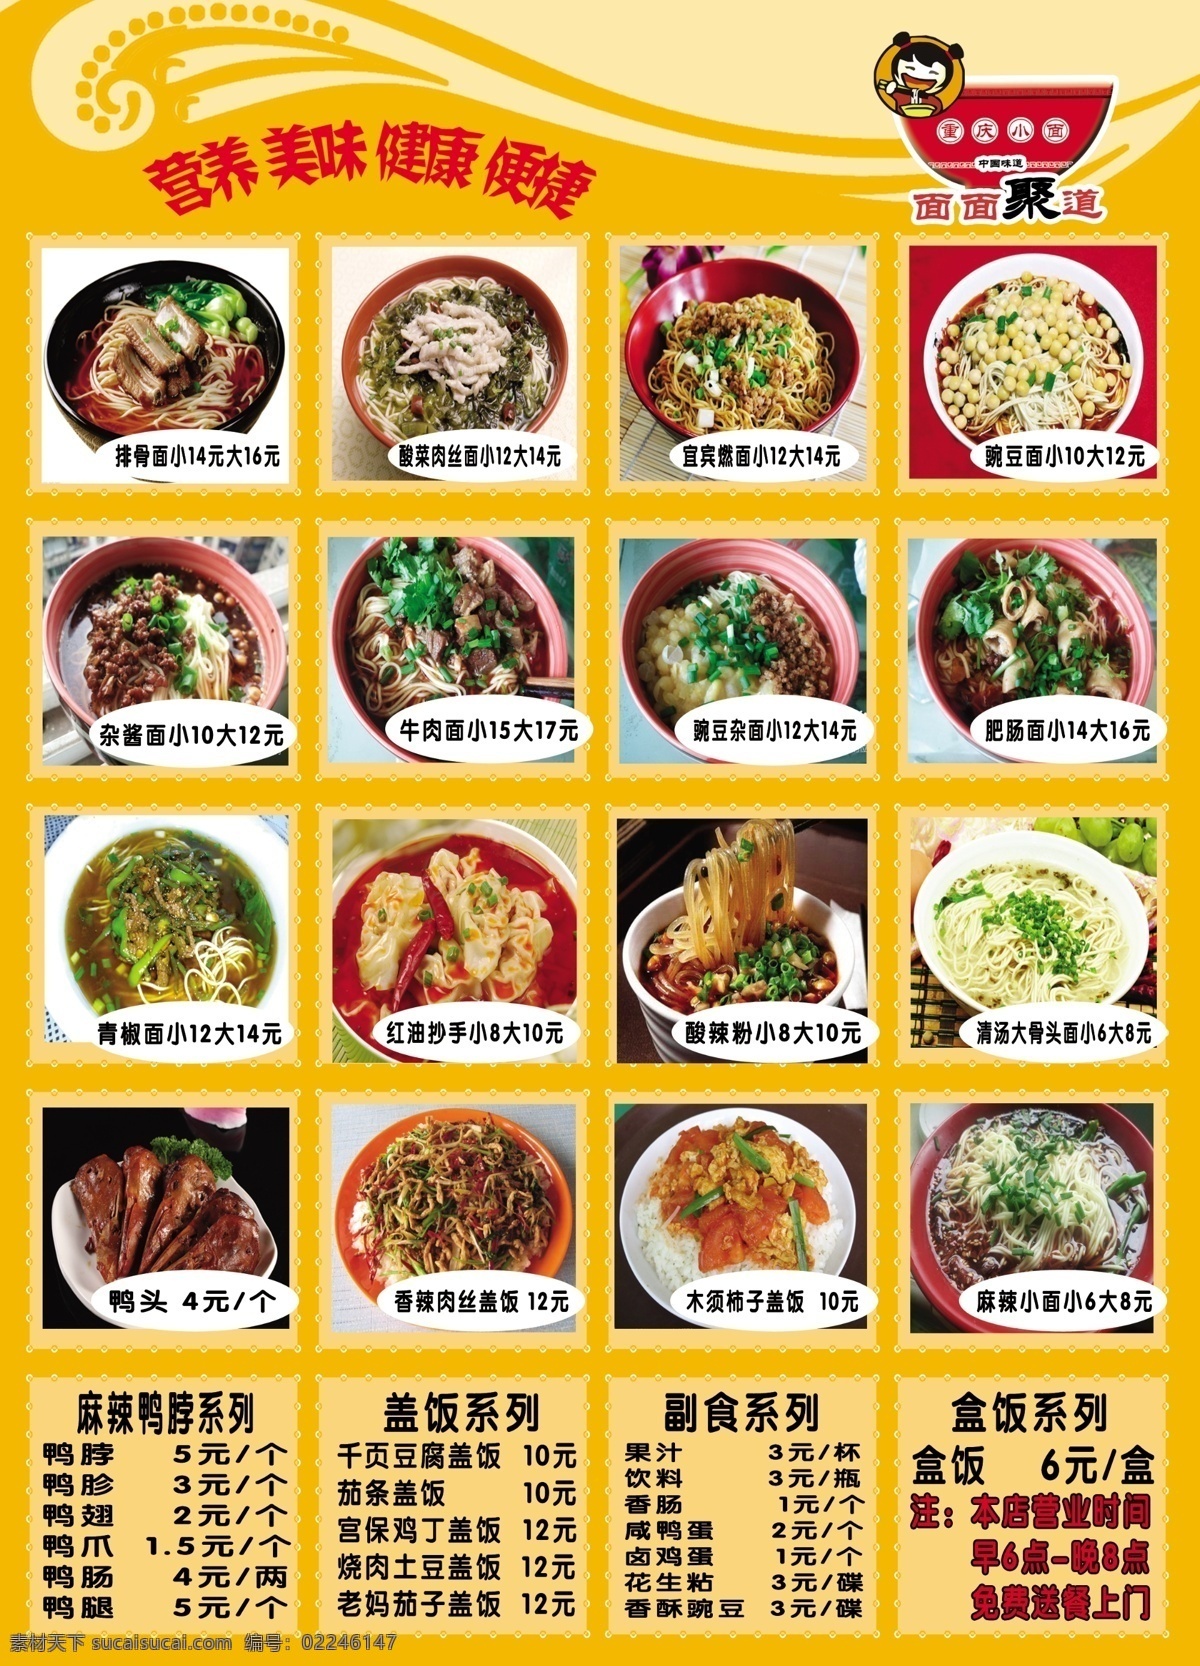 菜单 宣传单 菜单宣传单 菜图 营养 美味 健康 便捷 原创设计 原创海报